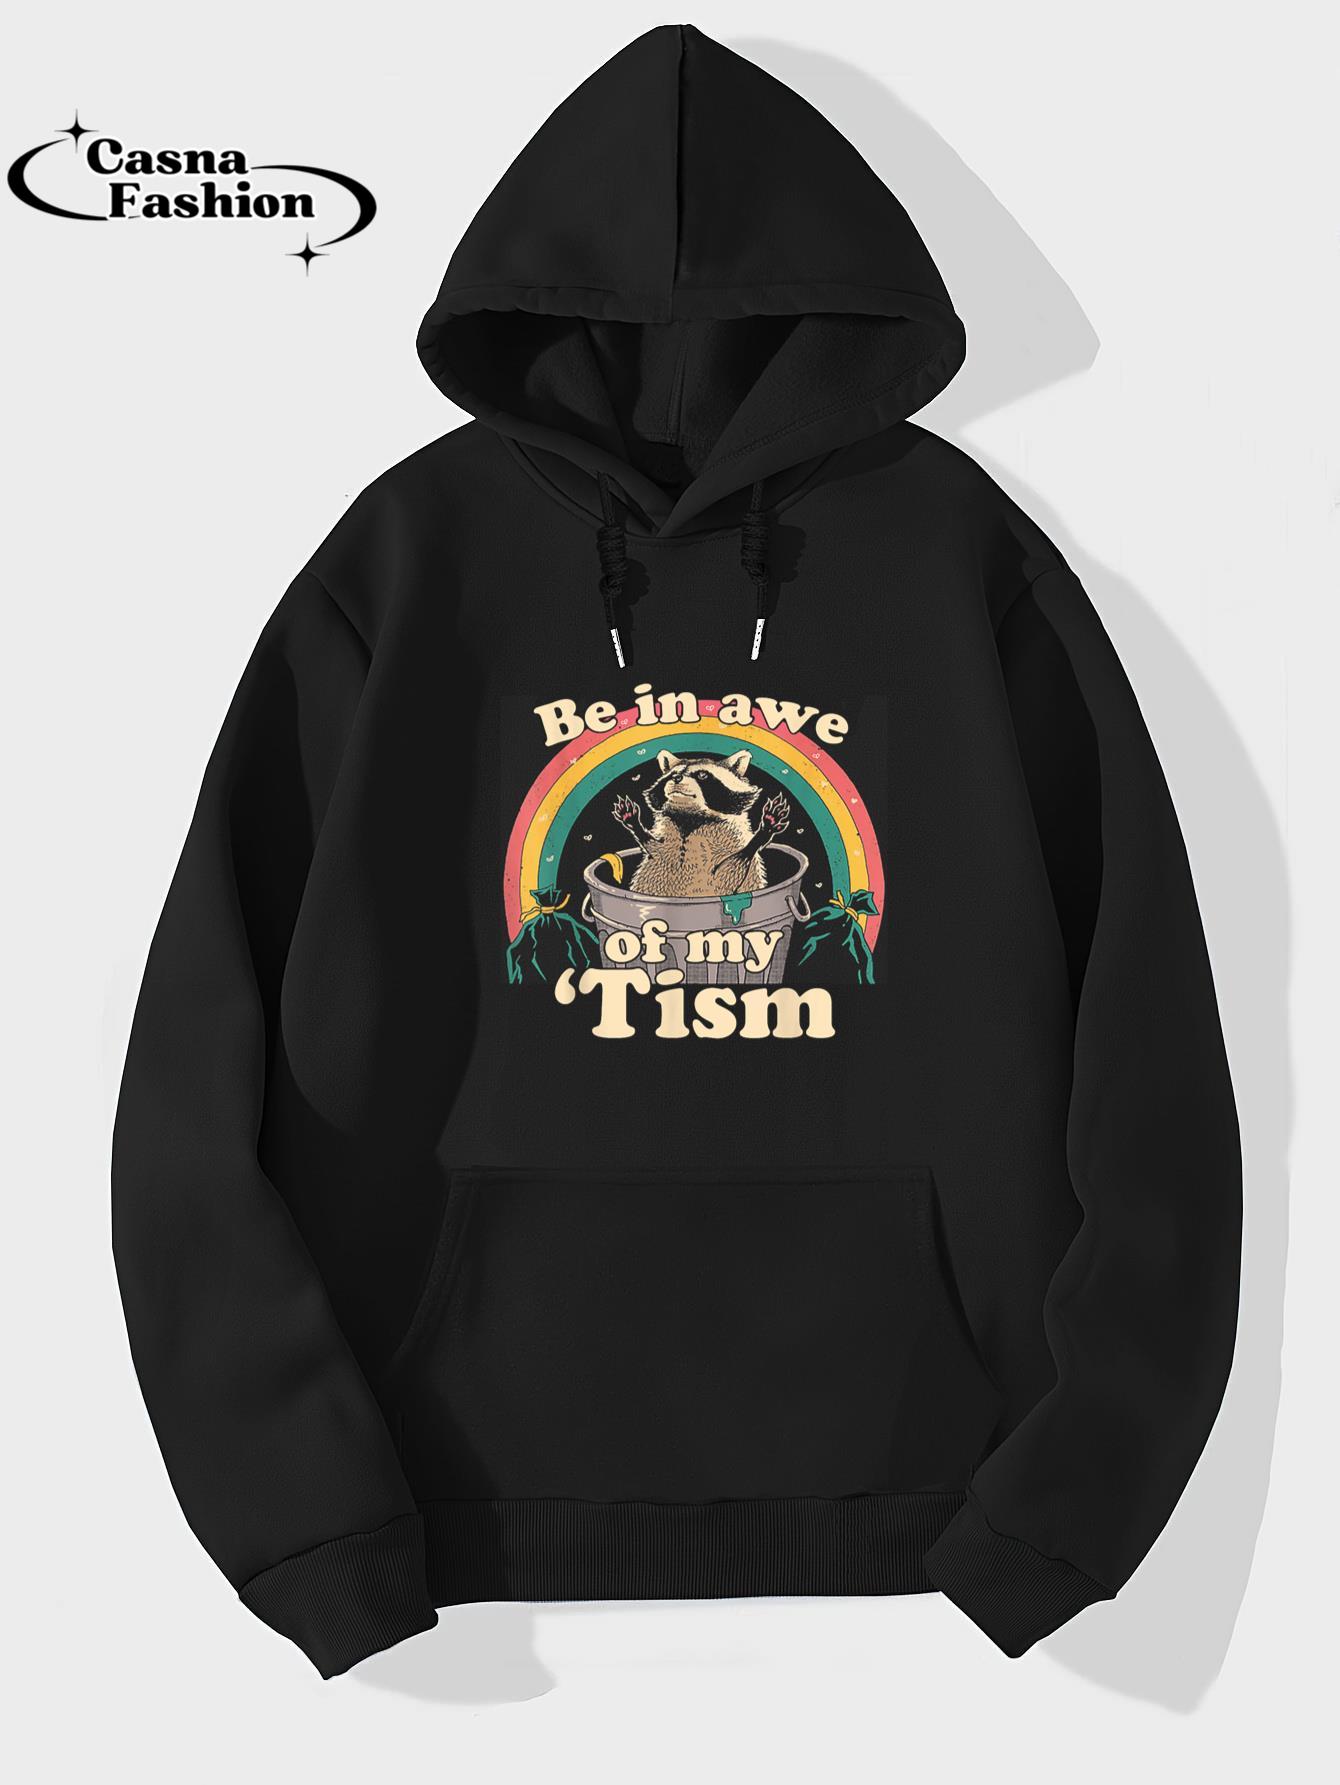 casnafashion_Hoodie_Autism Funny Be In Awe Of My 'Tism Meme Autistic Opossum T-Shirt_hoodie_black hoodie